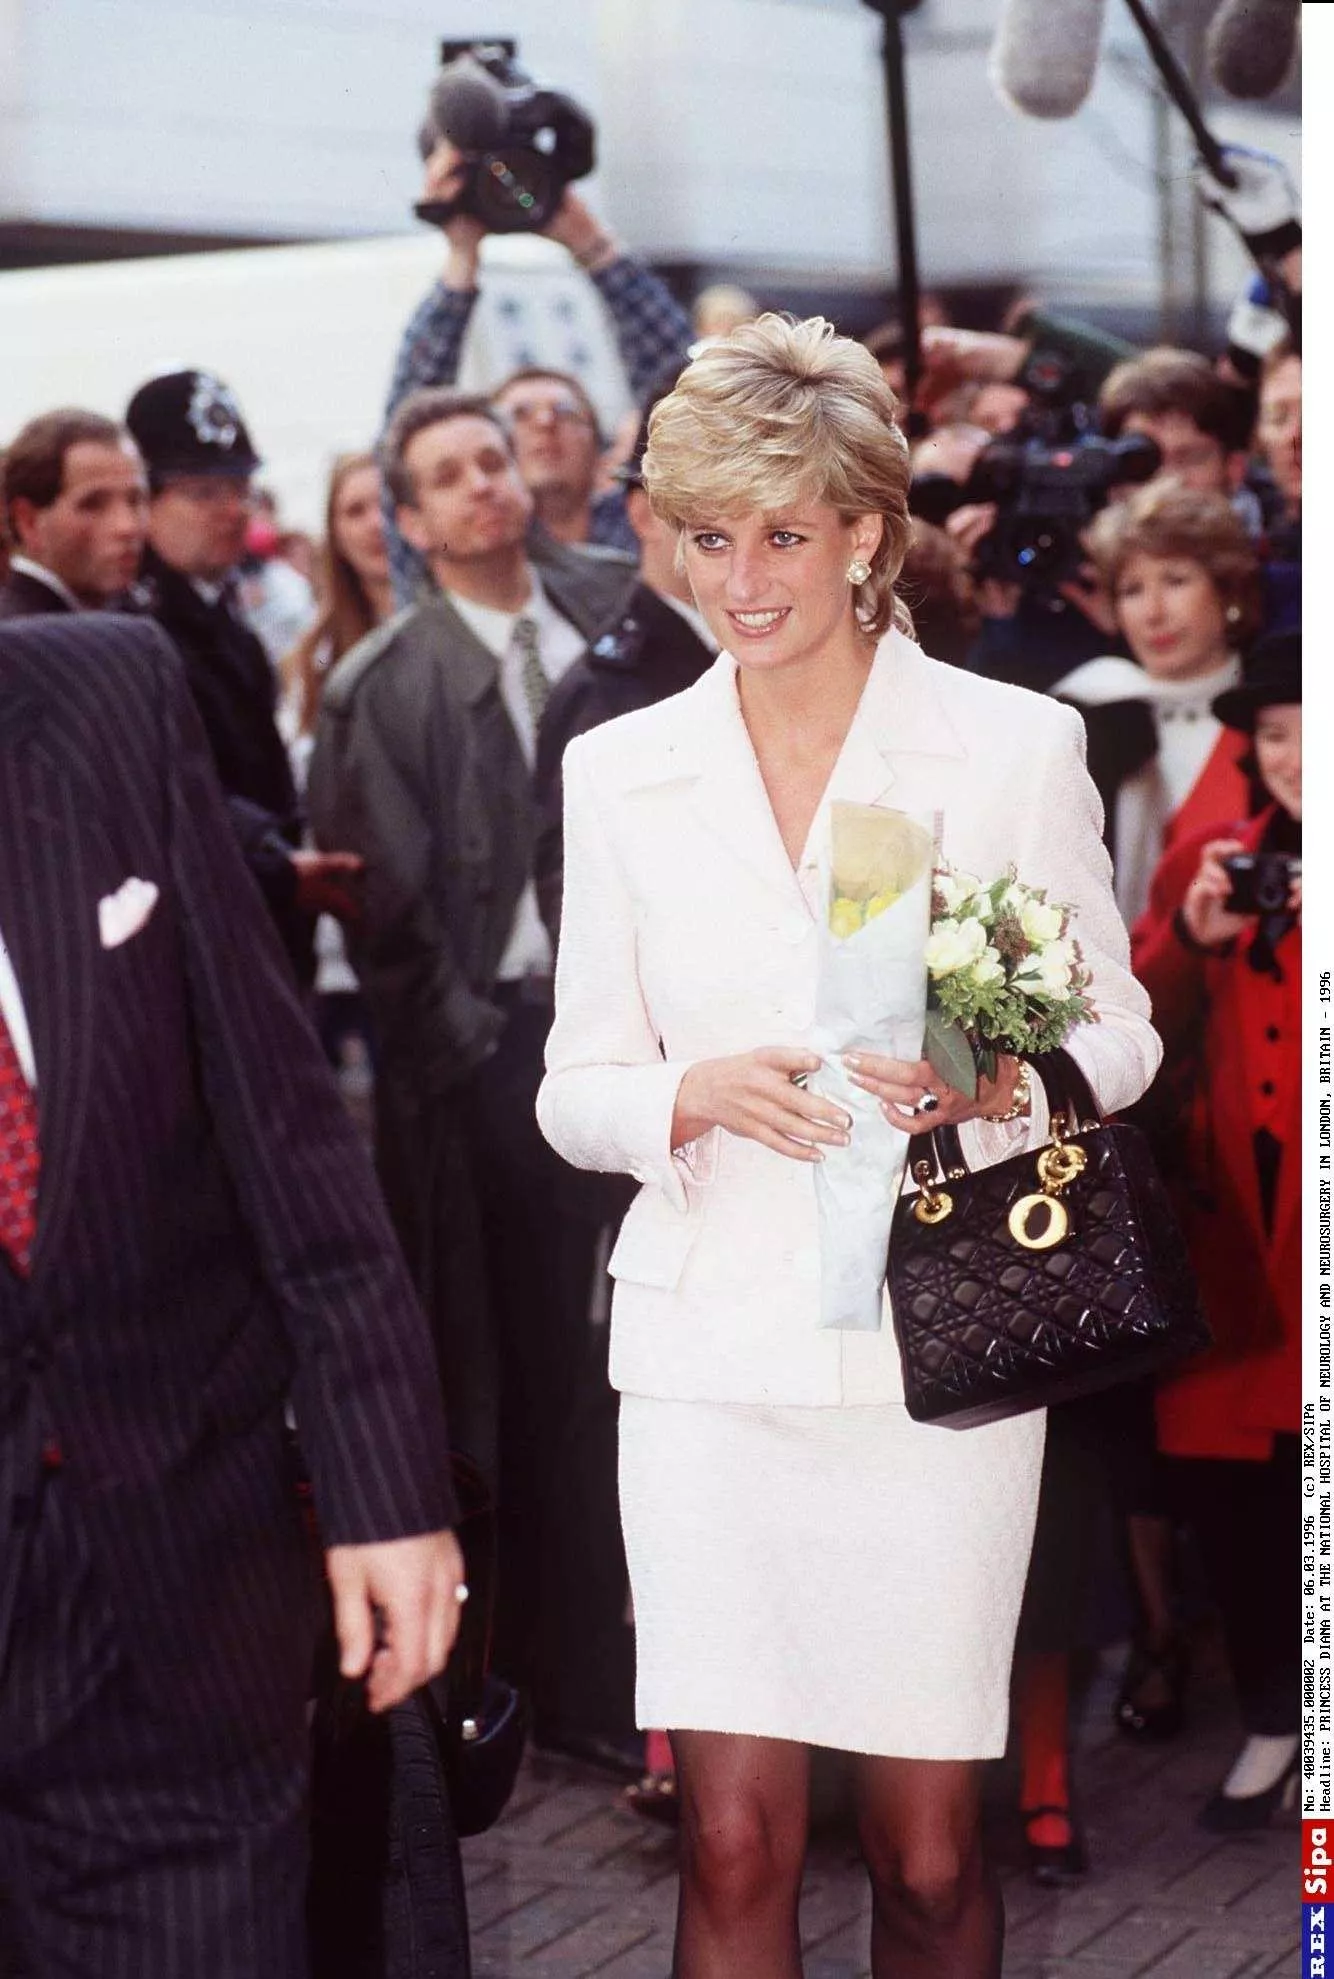 ديور تقدّم حقيبة ليدي ديور Lady Dior وروابطها الرمزية مع ليدي ديانا